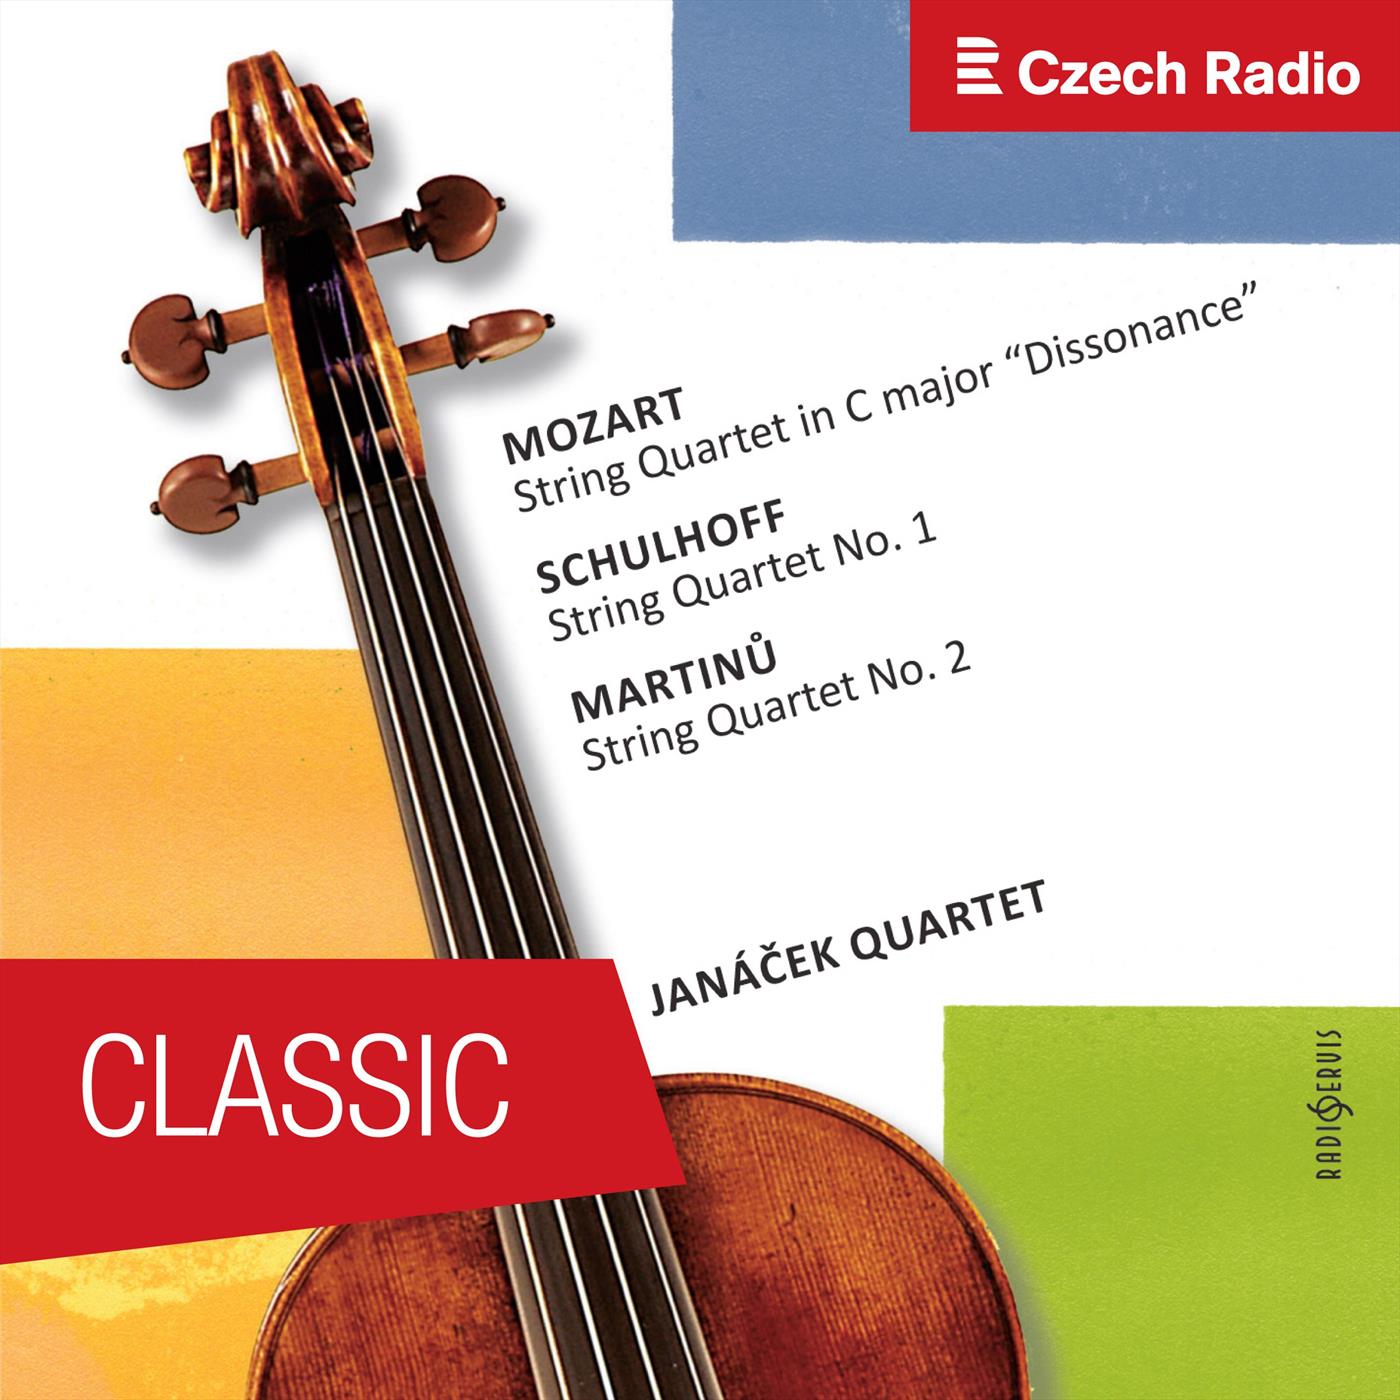 String Quartet No. 2: I. Moderato